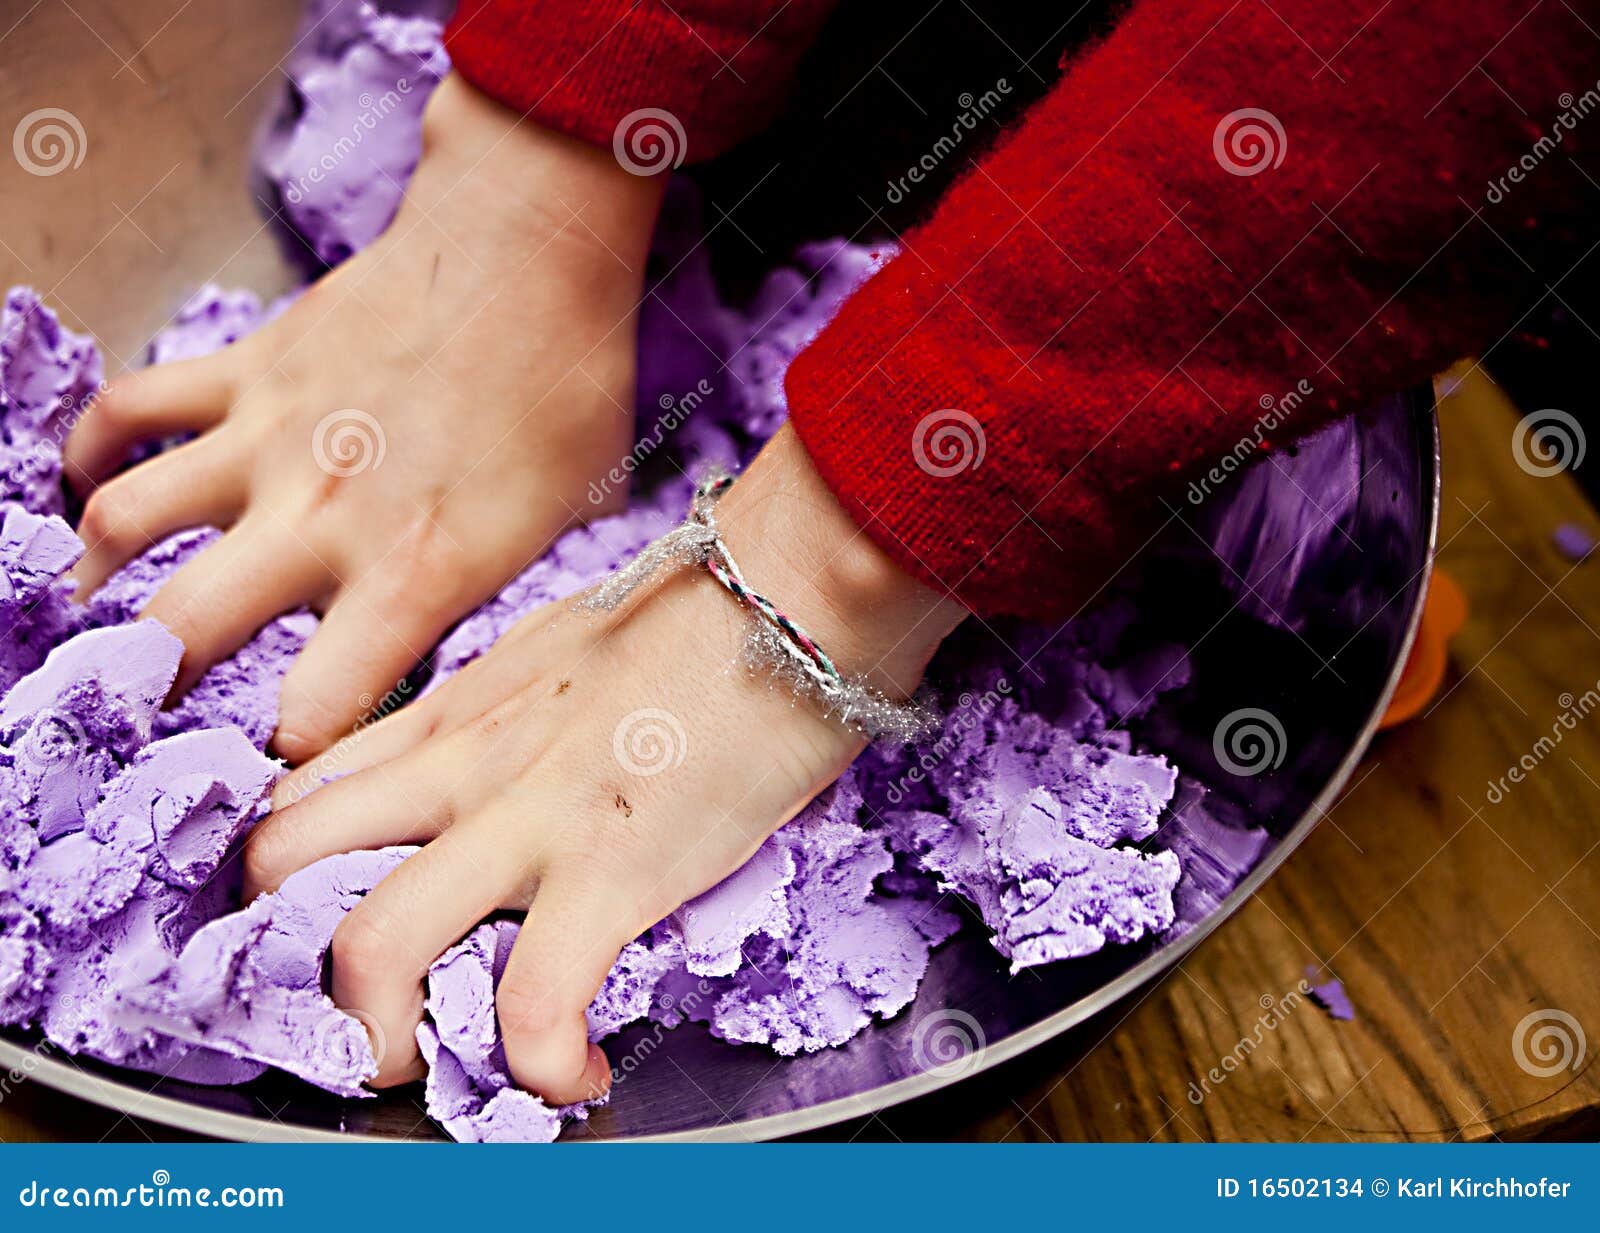 Mani occupate. Un accoppiamento delle mani del bambino che mescolano la lavanda ha colorato la pasta